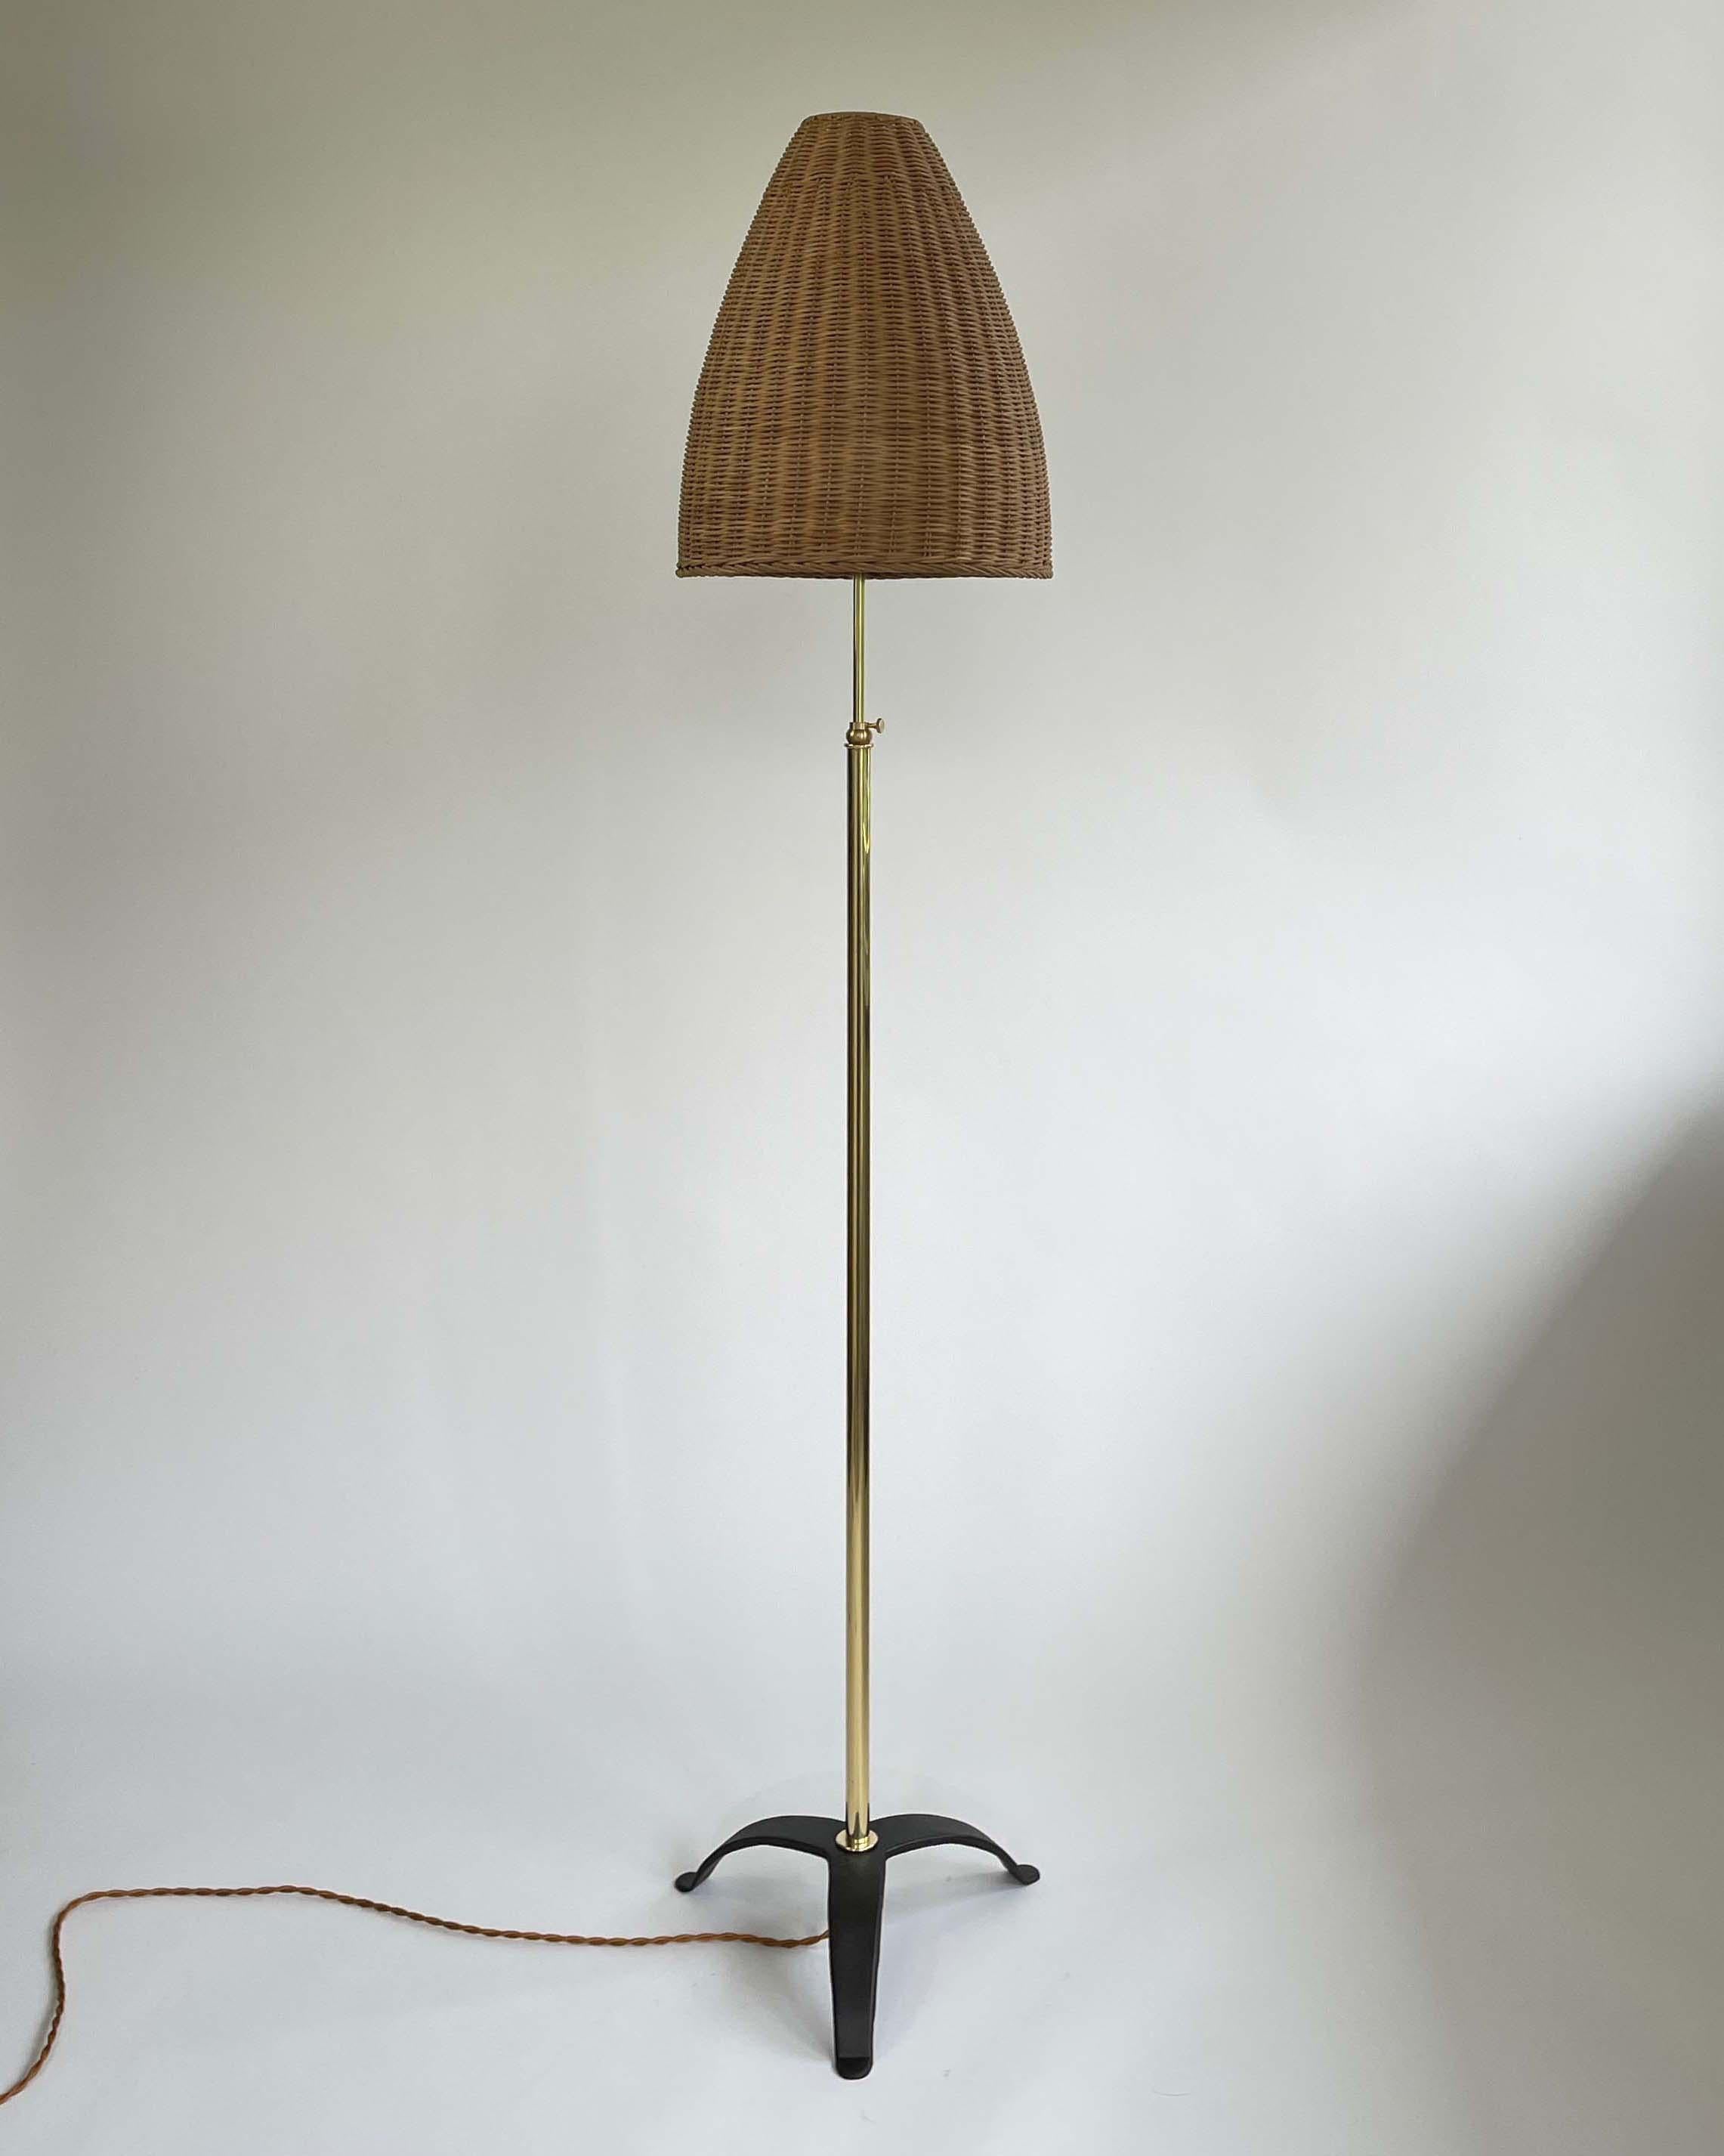 Ce lampadaire inhabituel a été conçu et fabriqué en Autriche dans les années 1960. Elle est dotée d'un abat-jour en rotin en forme de ruche et d'une base tripode en laiton. 

La lumière est réglable de 55.1